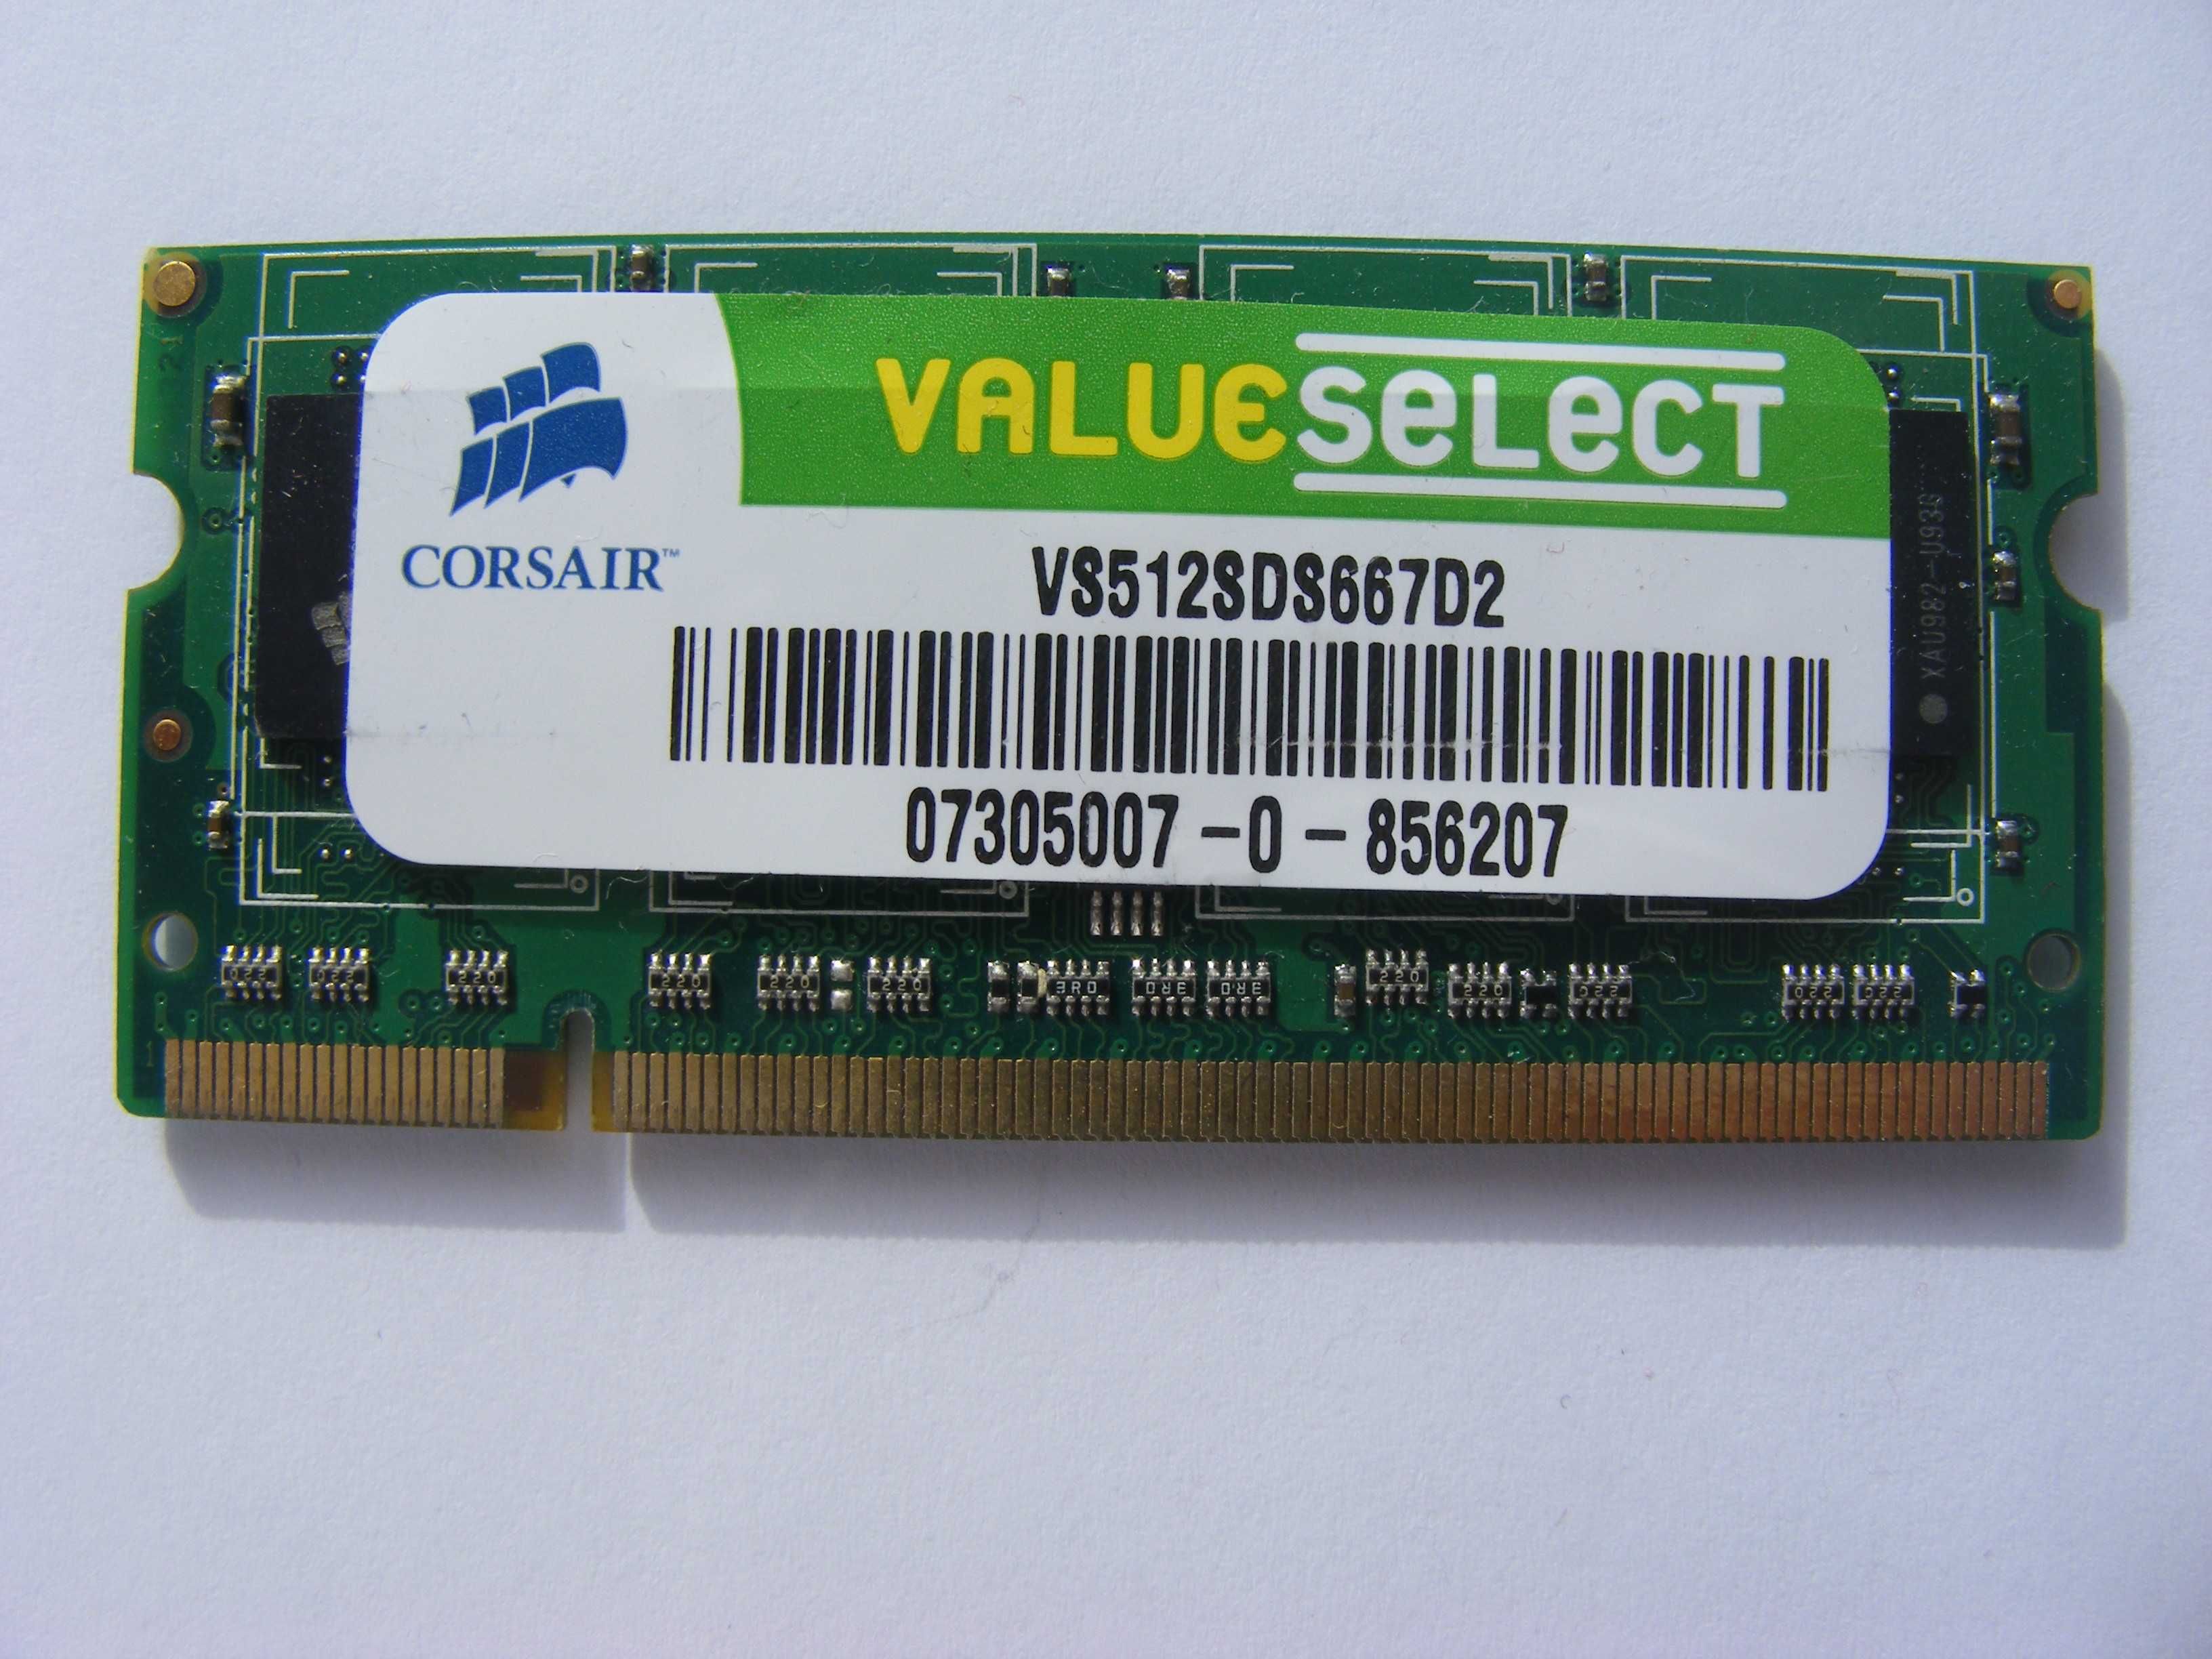 Memeorie Ram Leptop DDR2  , toate 3 la 15 Ron